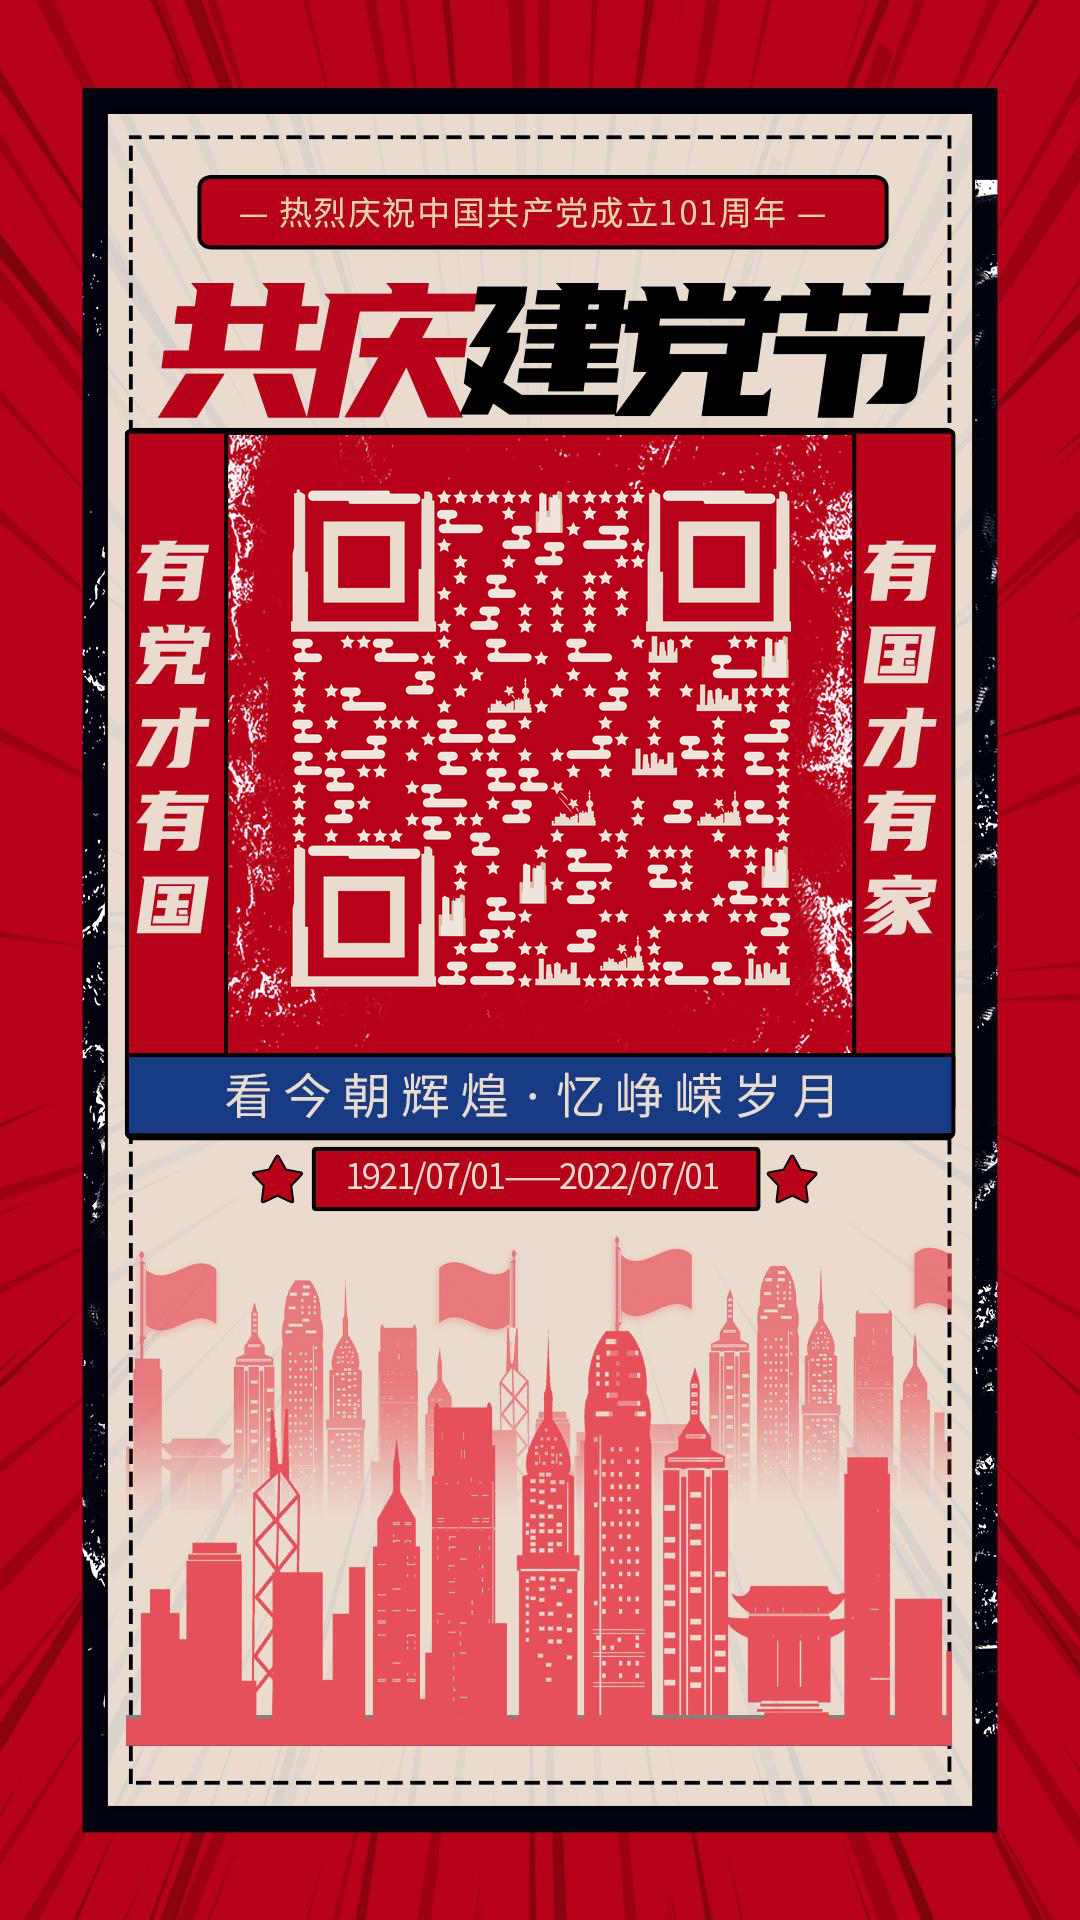 复古剪影海报七一建党节繁荣的国二维码生成器-平面静态-手机壁纸